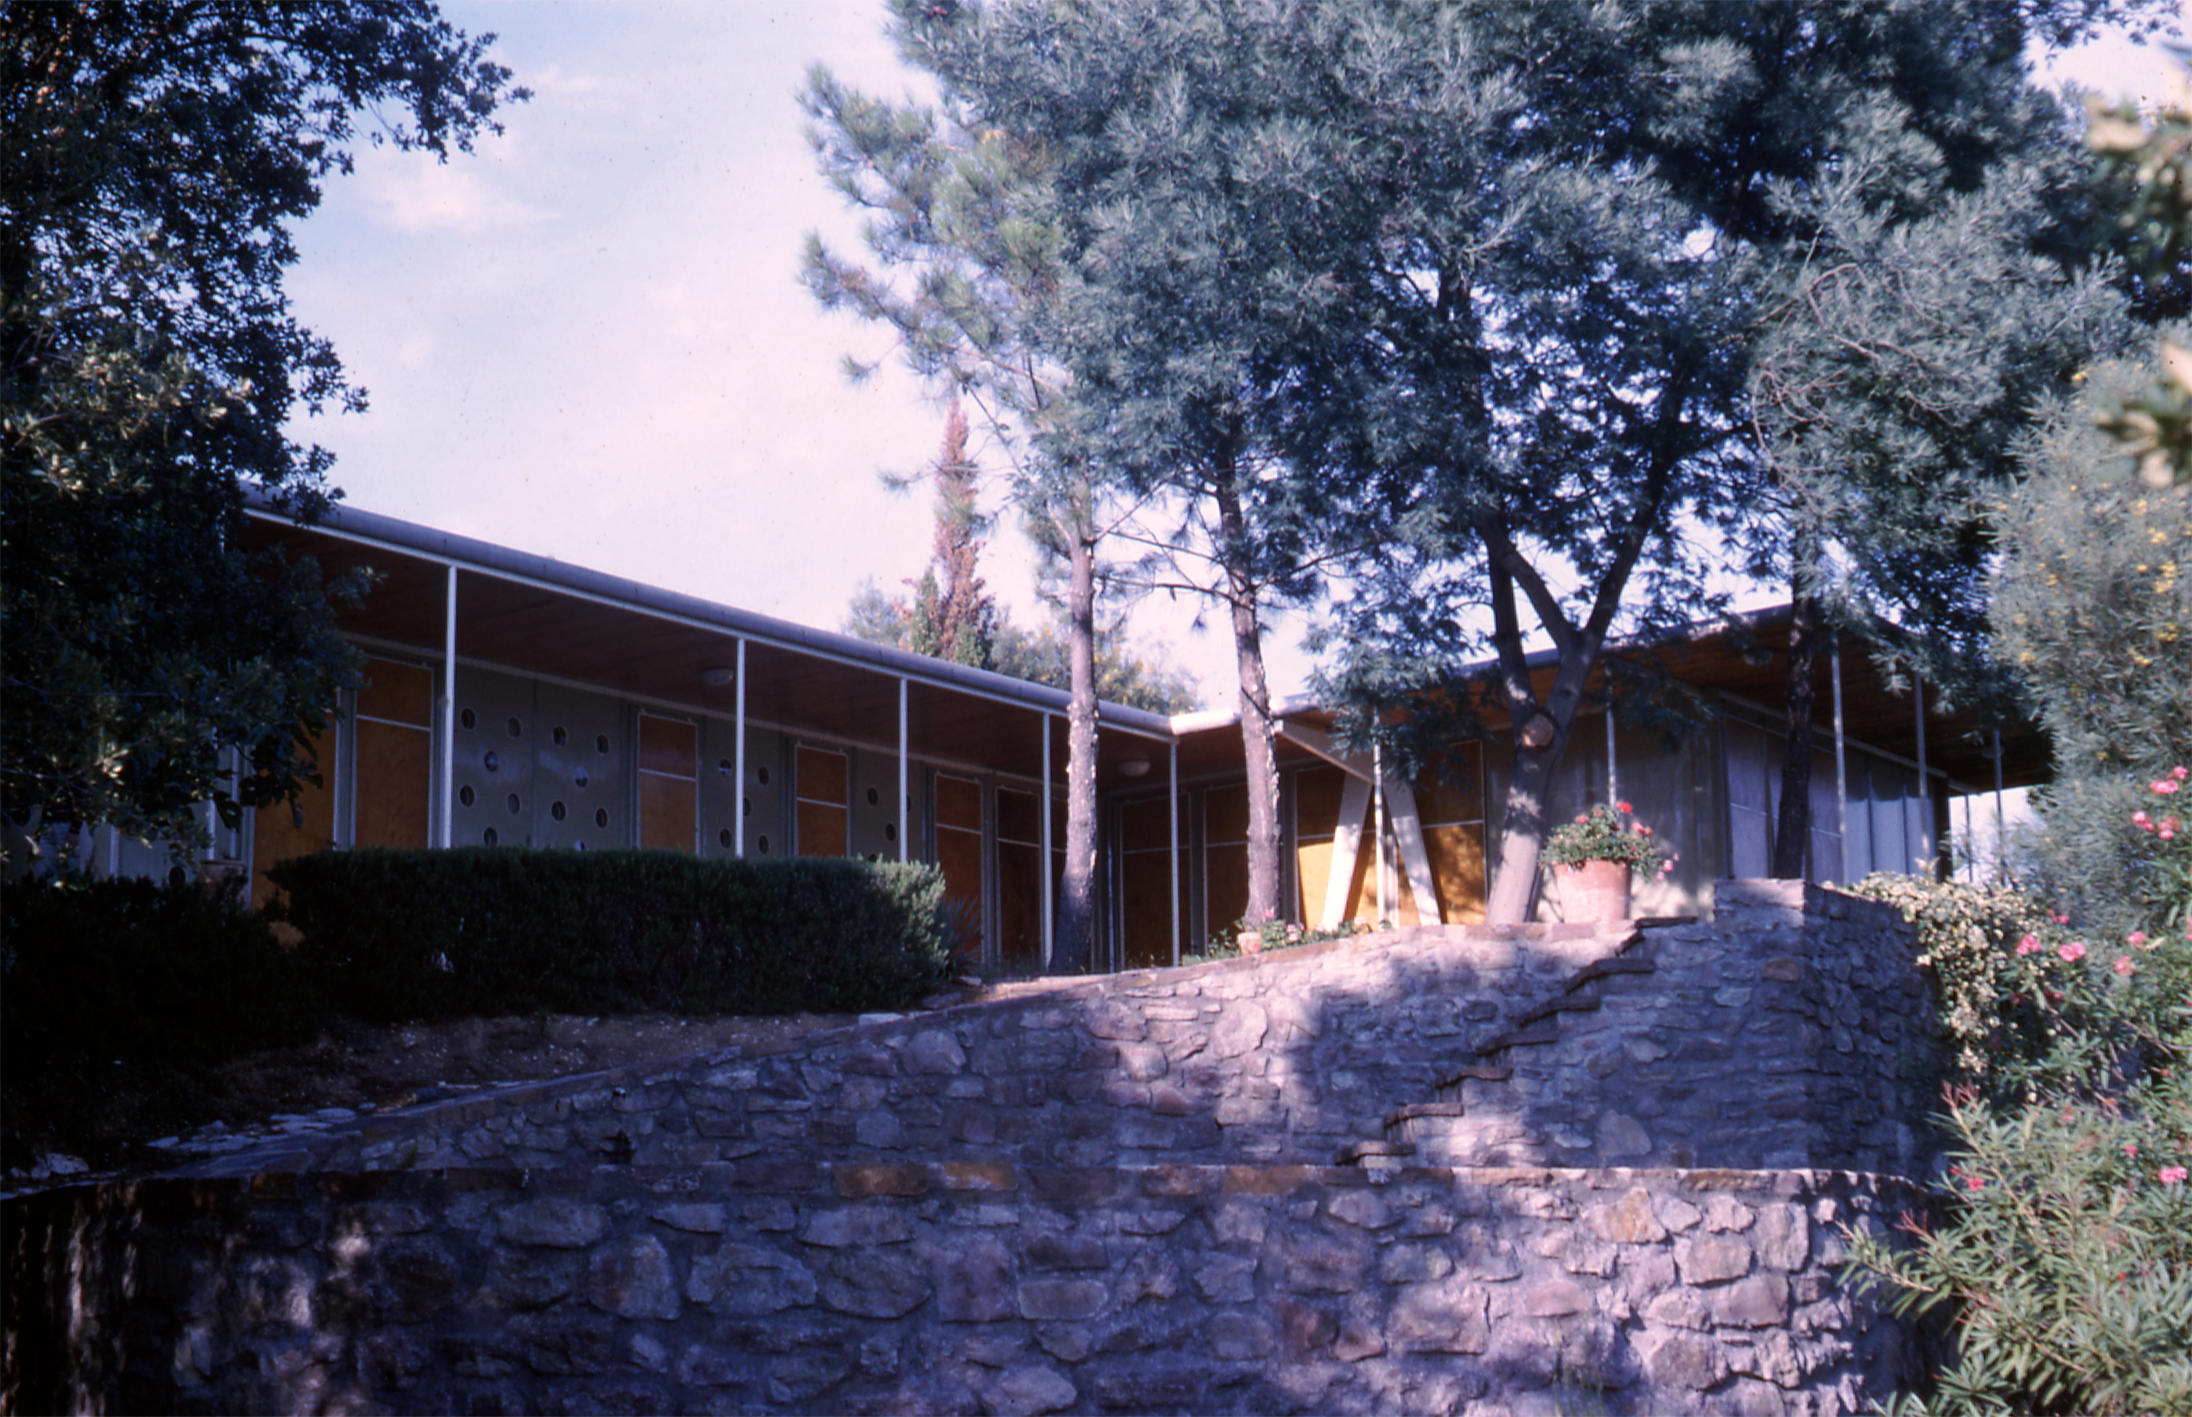 Villa Lopez, Guerrevieille, Sainte-Maxime, 1952–1953 (Jean Prouvé with architects R. Lopez and H. Prouvé).